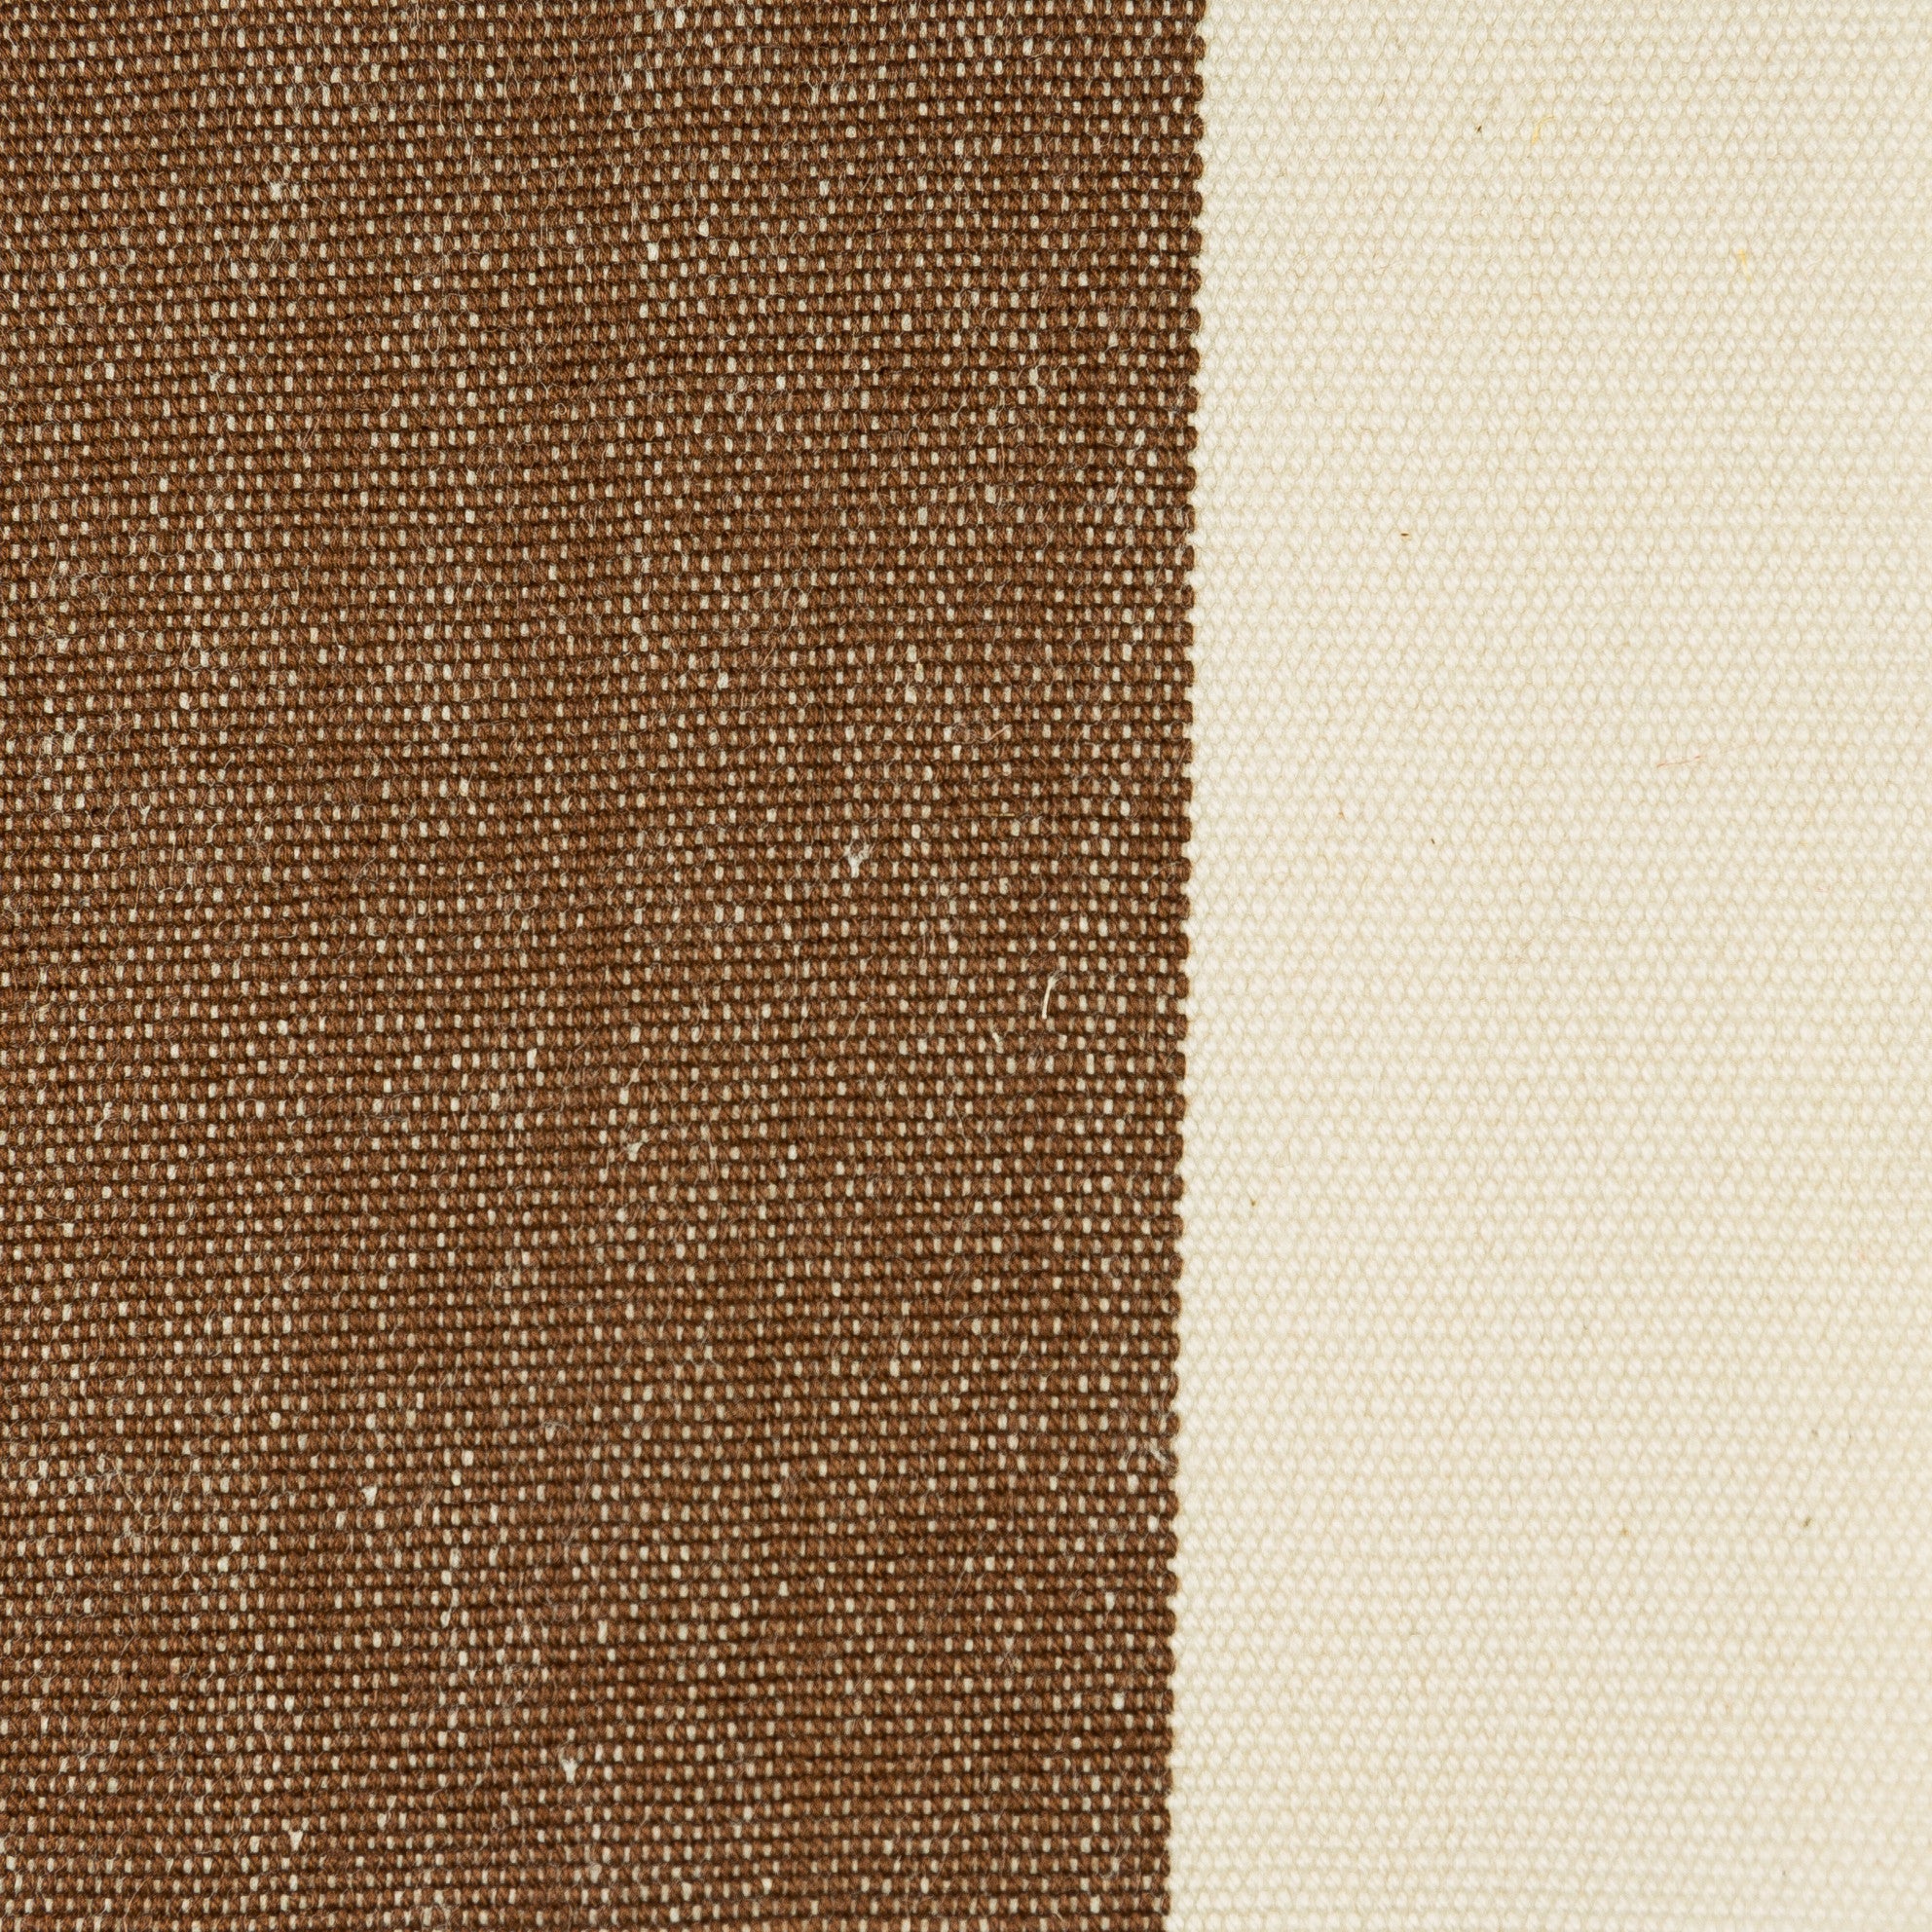 Woven Striped Fabric - Lizard 39/046 Terra Firma | Nicholas Engert Interiors